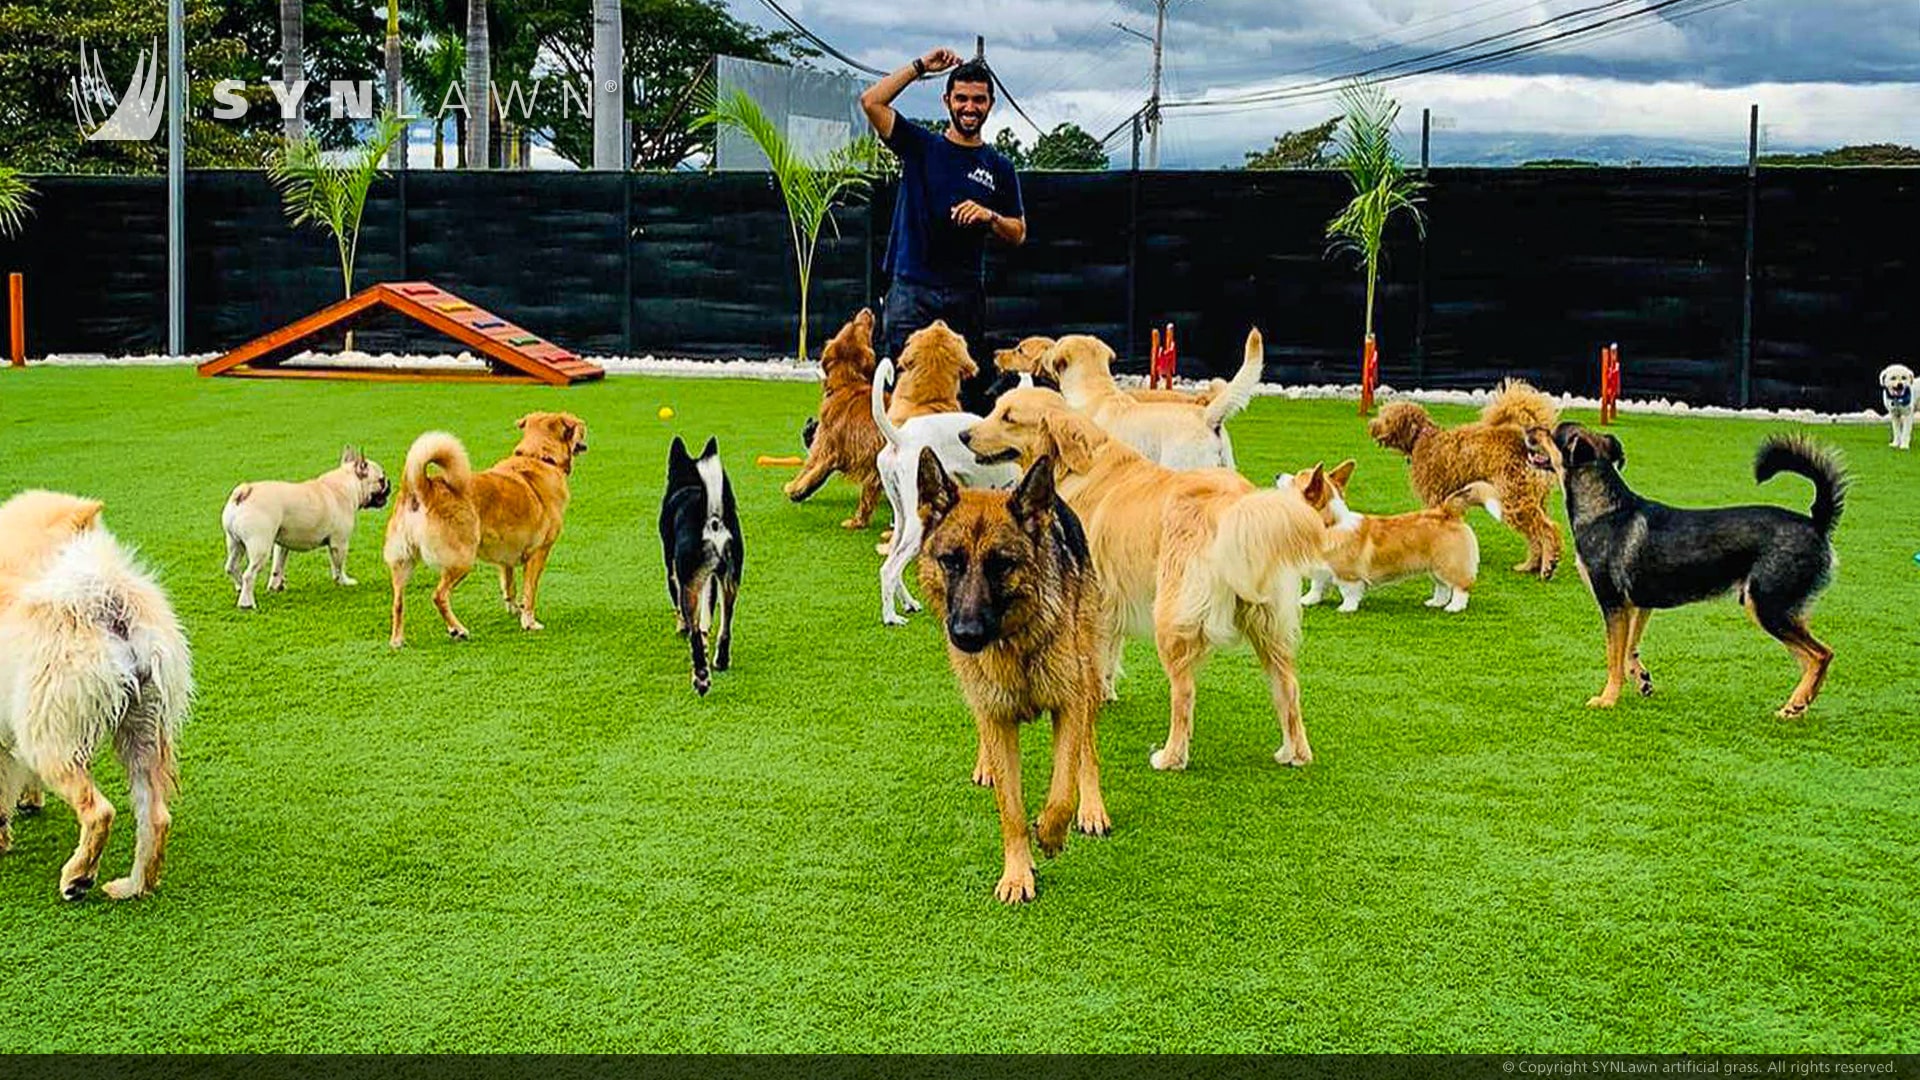 哥斯达黎加的五星级宠物酒店和日托中心增加了狗狗游乐区